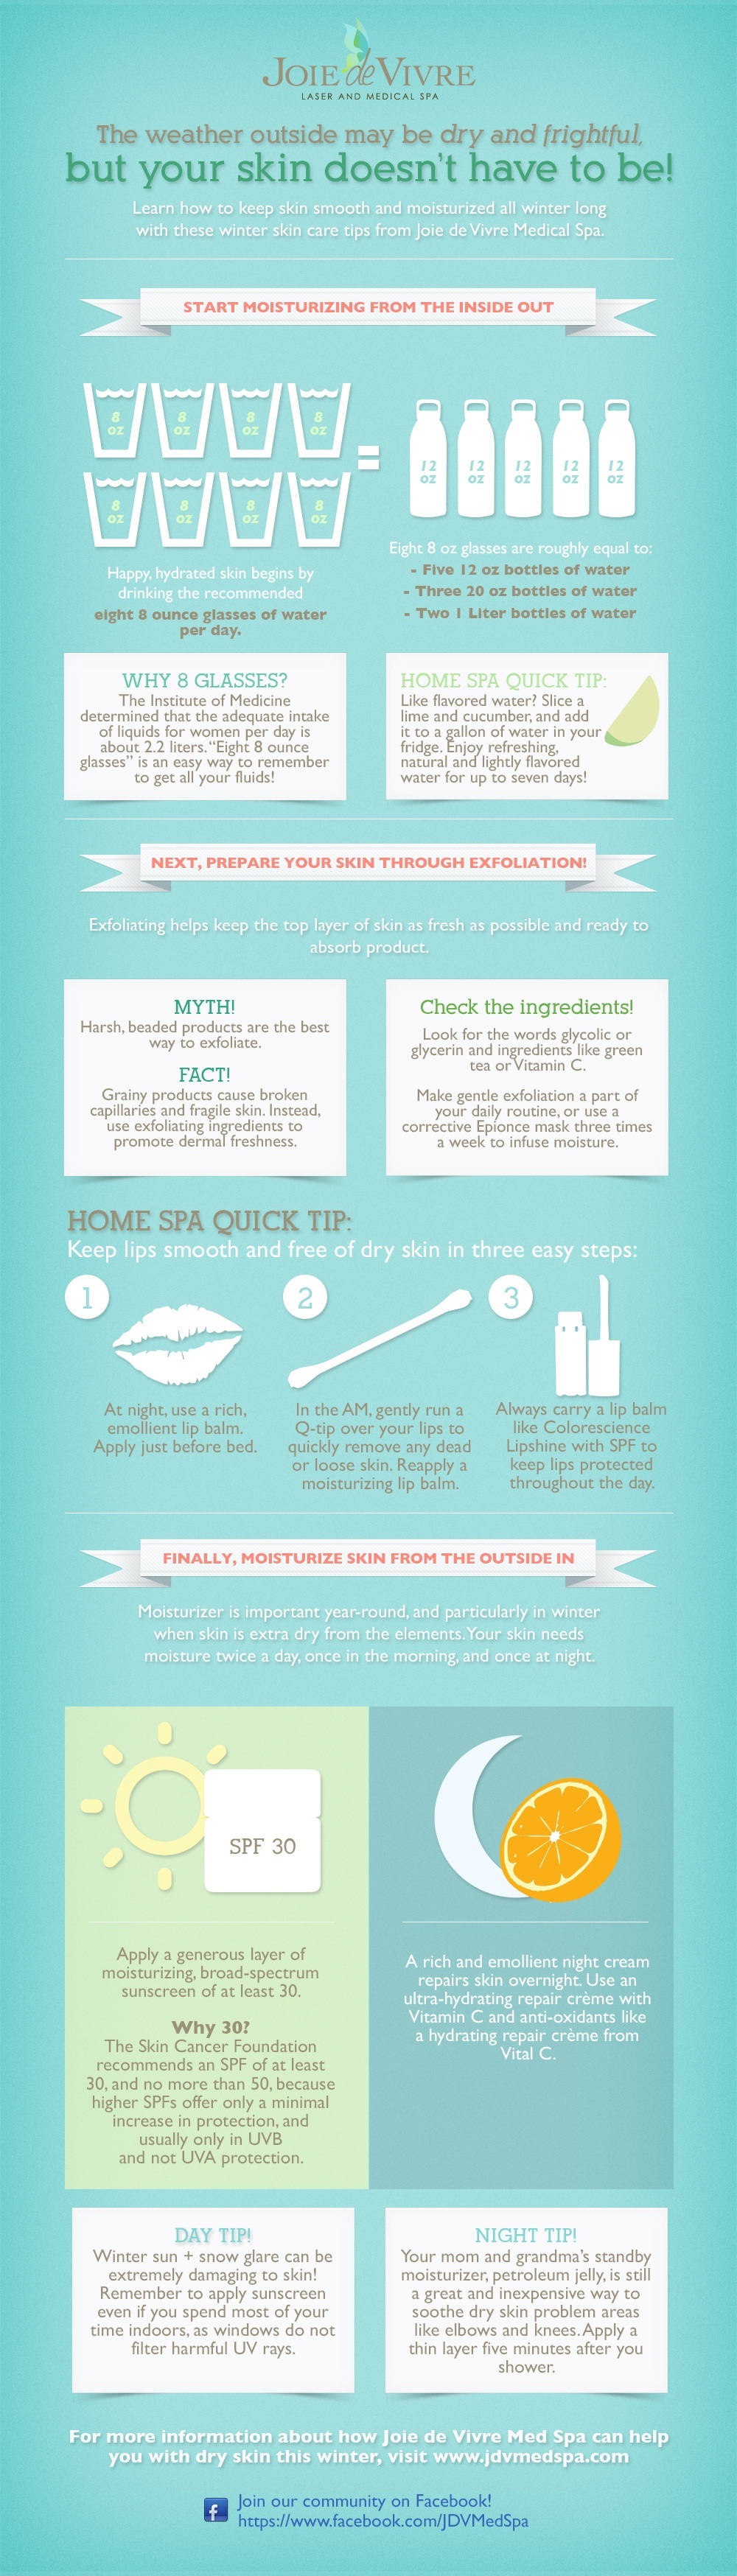 winter-skin-care-tips-infographic.jpg